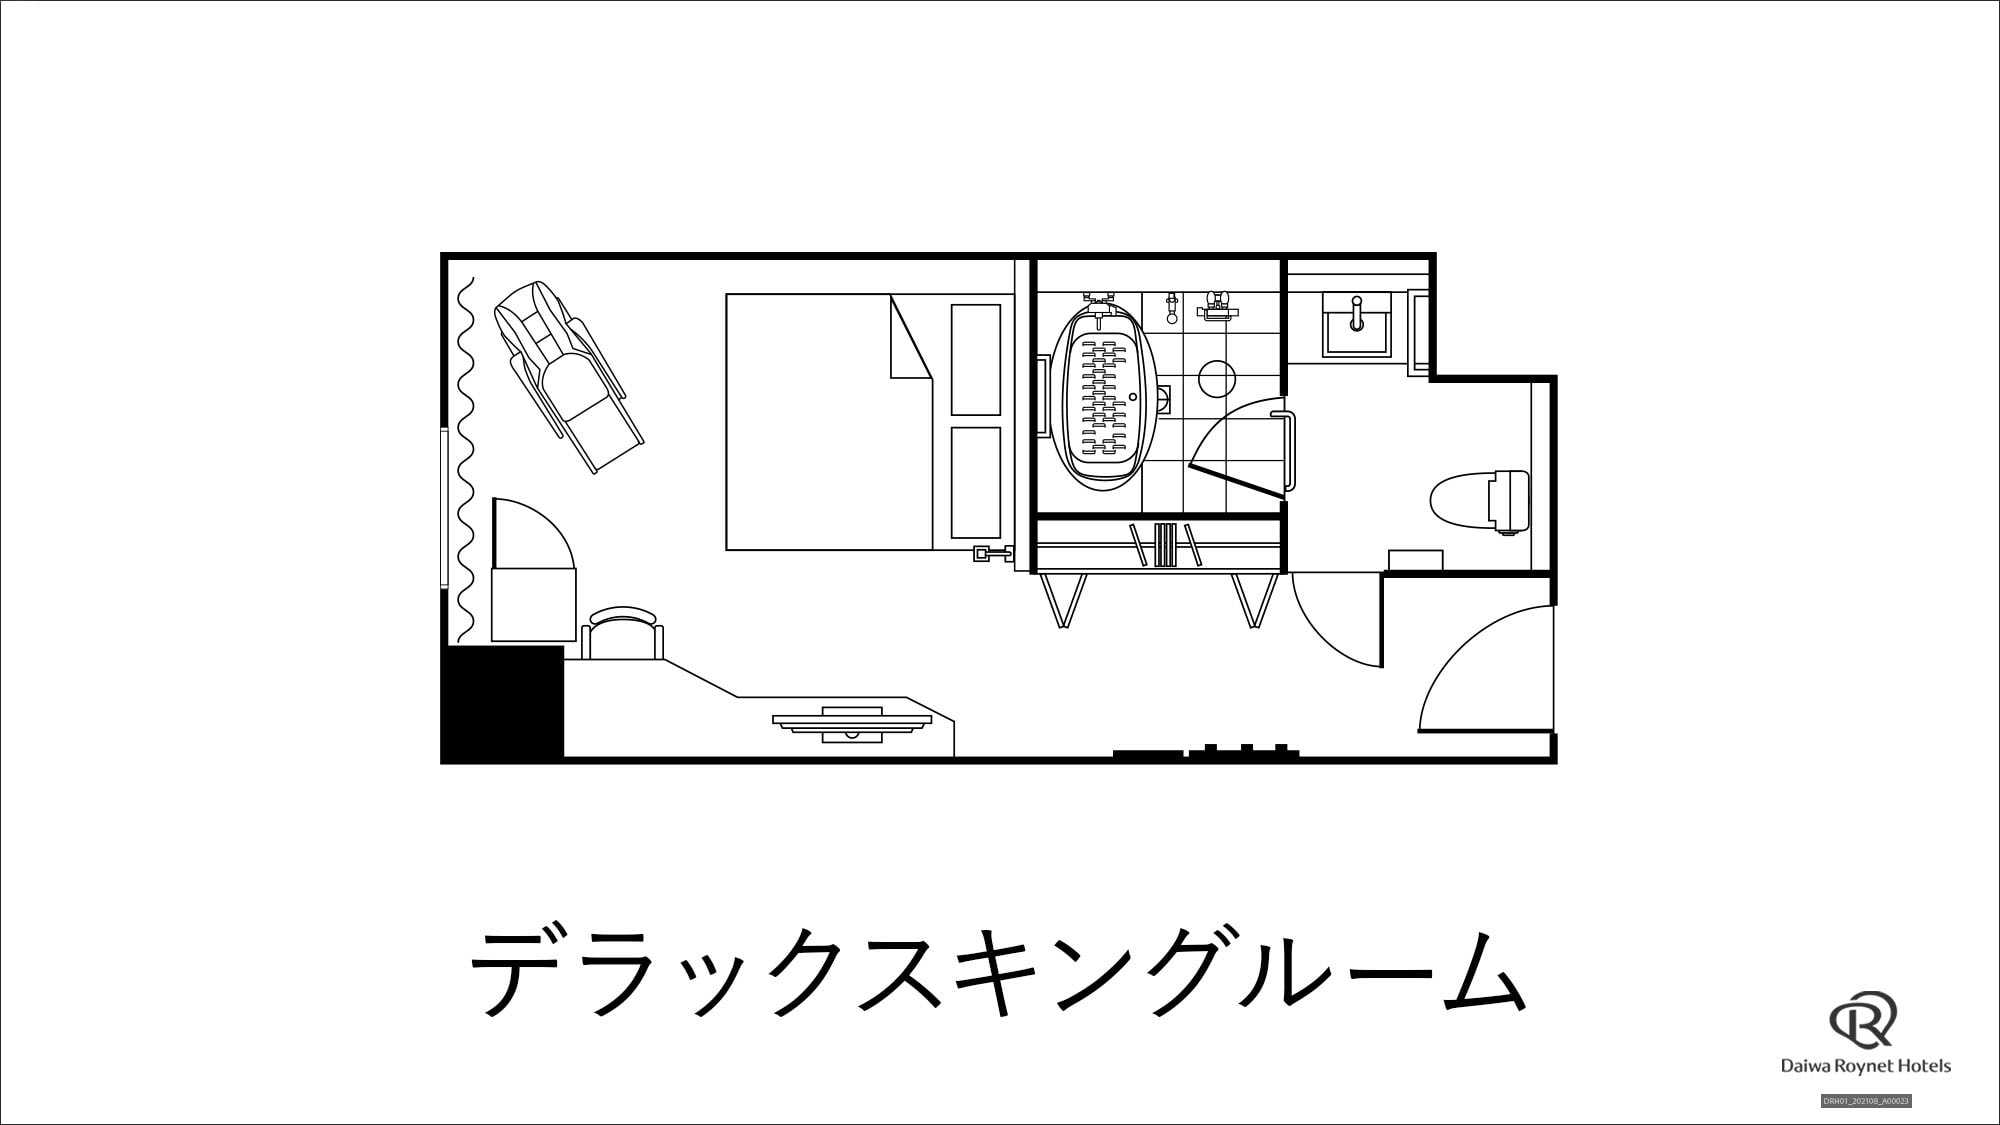 Deluxe King Room_Floor Plan